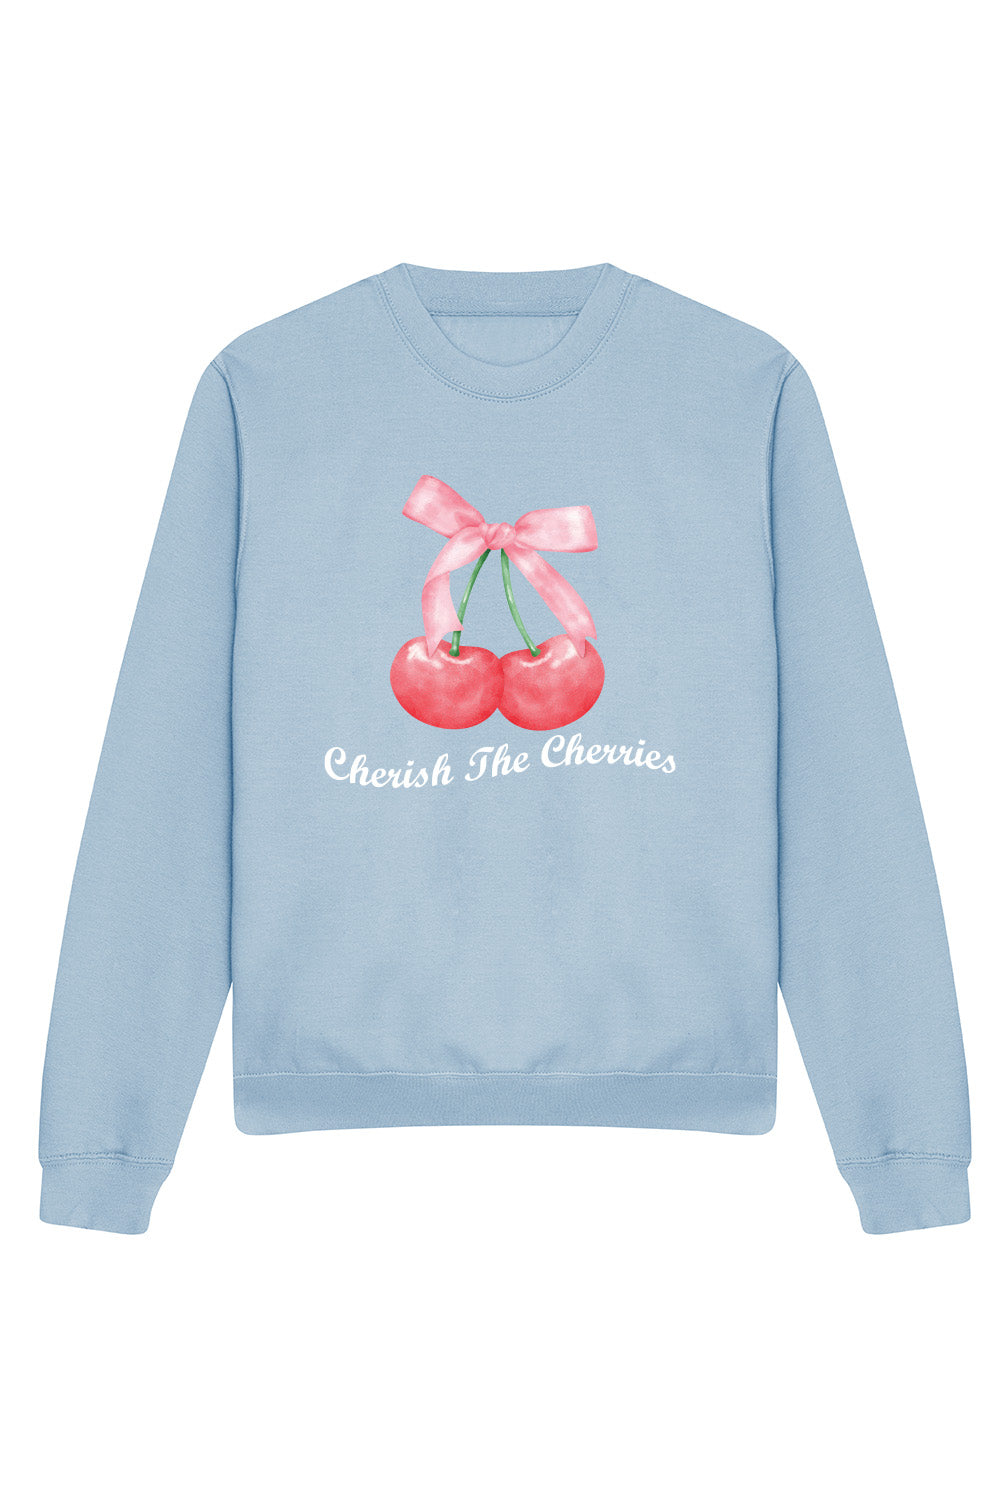 Cherish the Cherries Sweatshirt In Sky Blue (Custom Pack)